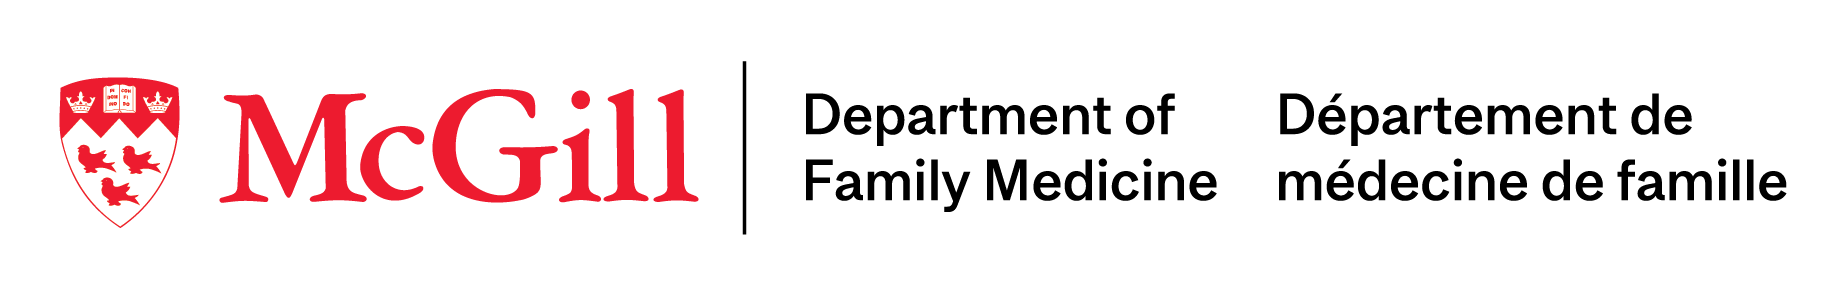 Logo du Département de médecine de famille de McGill